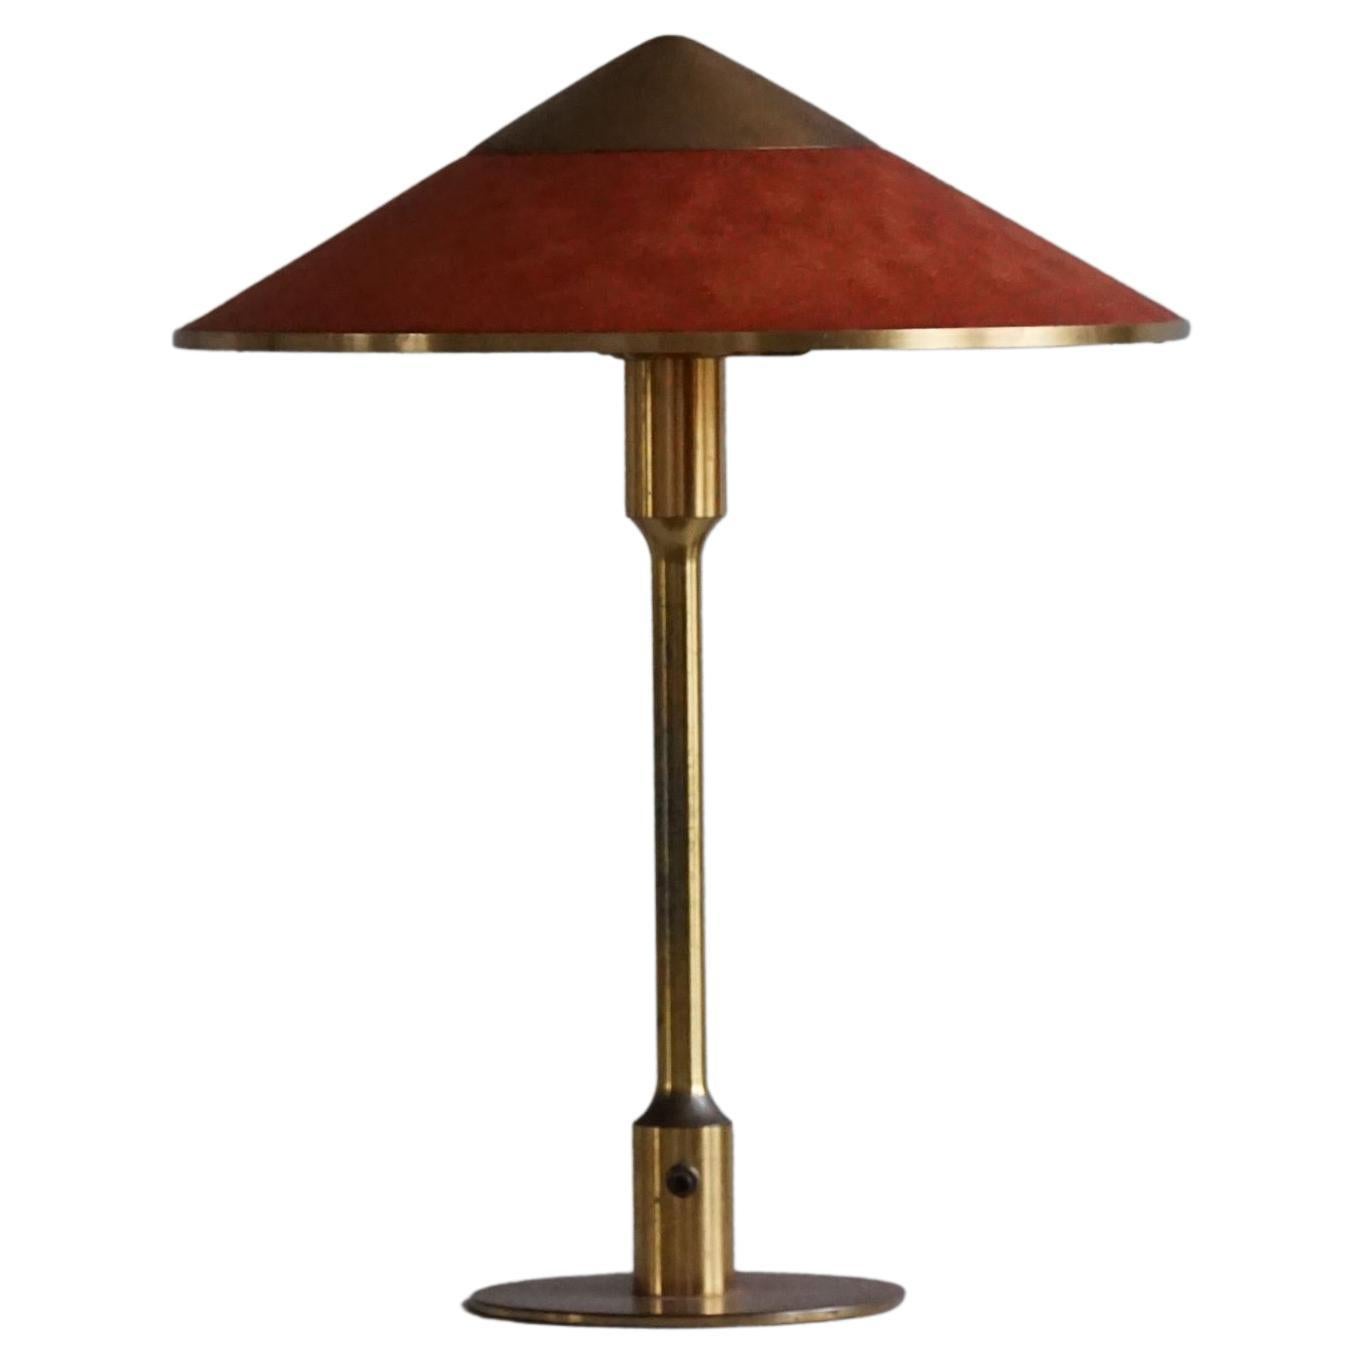 Danish Modern, Model "T3" Table Lamp by Niels Rasmussen Thykier, Made in 1930s